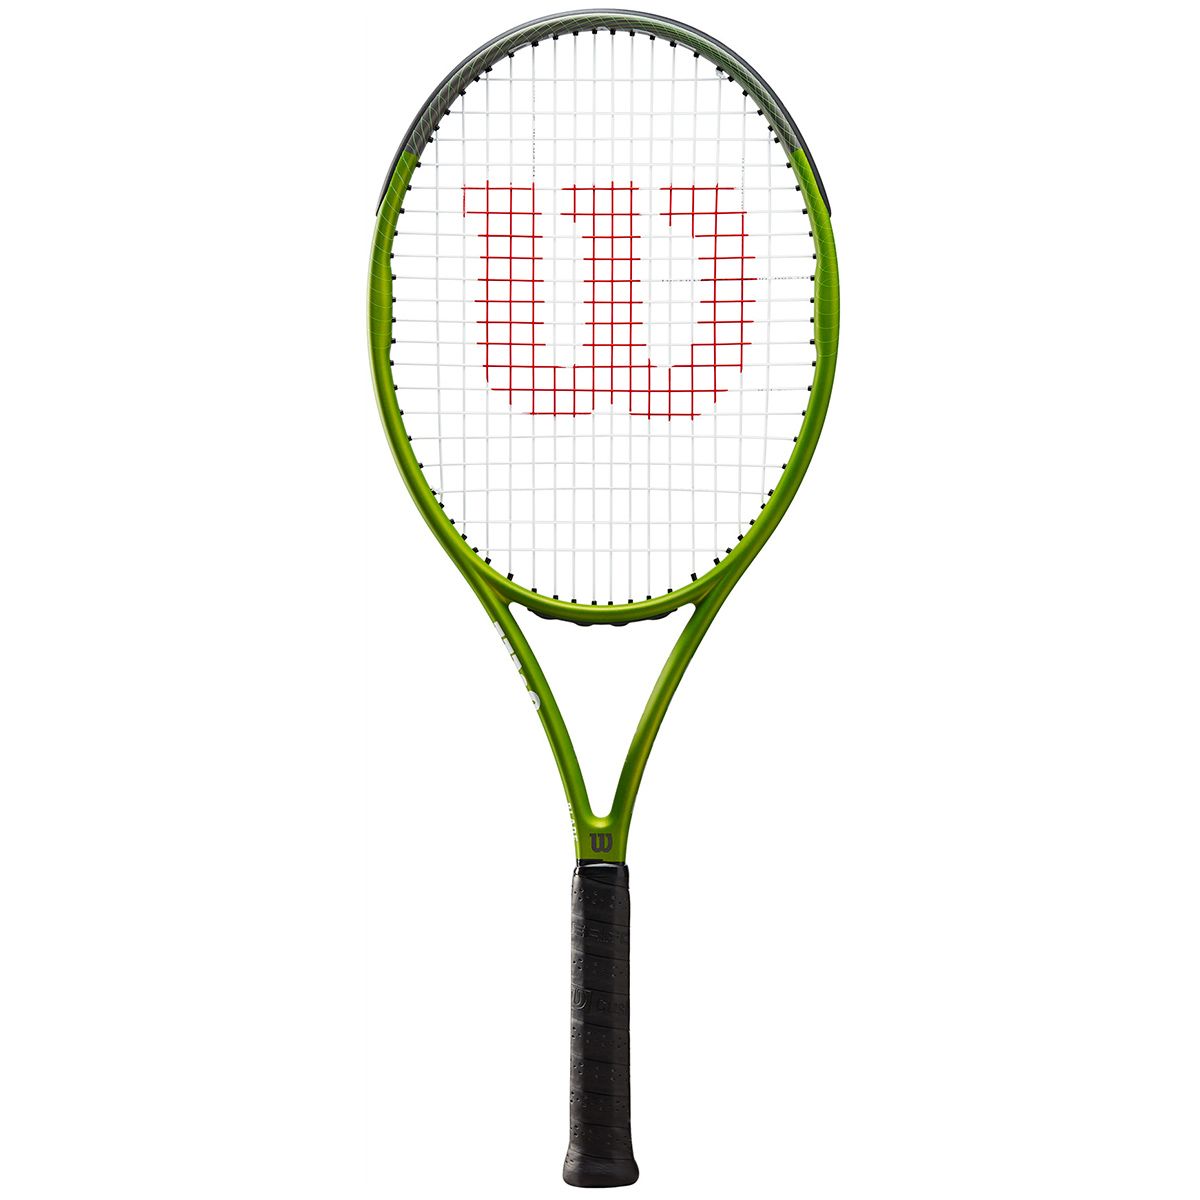 WİLSON - Wilson Blade Feel 103 Tenis Raketi 103_ 264 gram